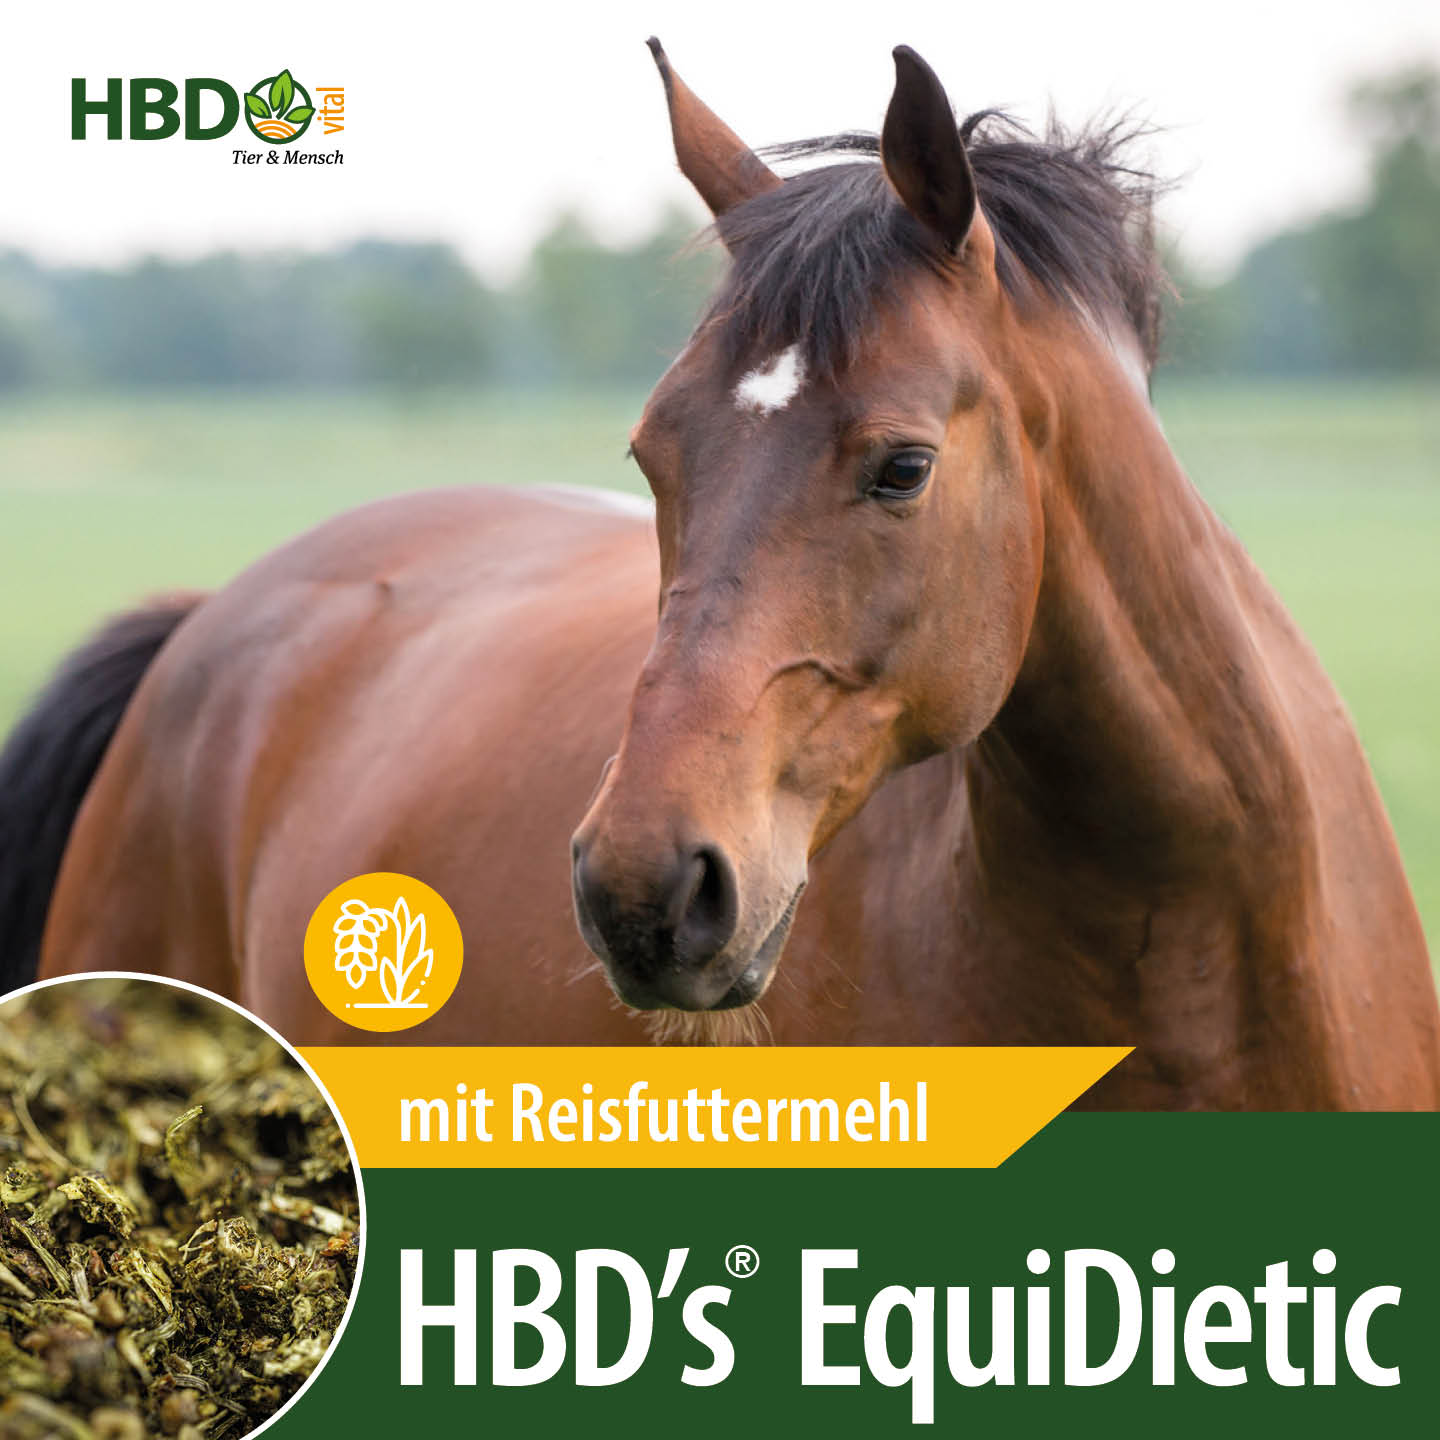 Shopbild für HBD’s EquiDietic mit Reis das diätistische Breifutter für Pferde- Das Bild zeigt den Produktnamen mit dem Hinweis, dass es mit Reisfuttermehl ist. Ein braunes Pferd ist zu sehen.